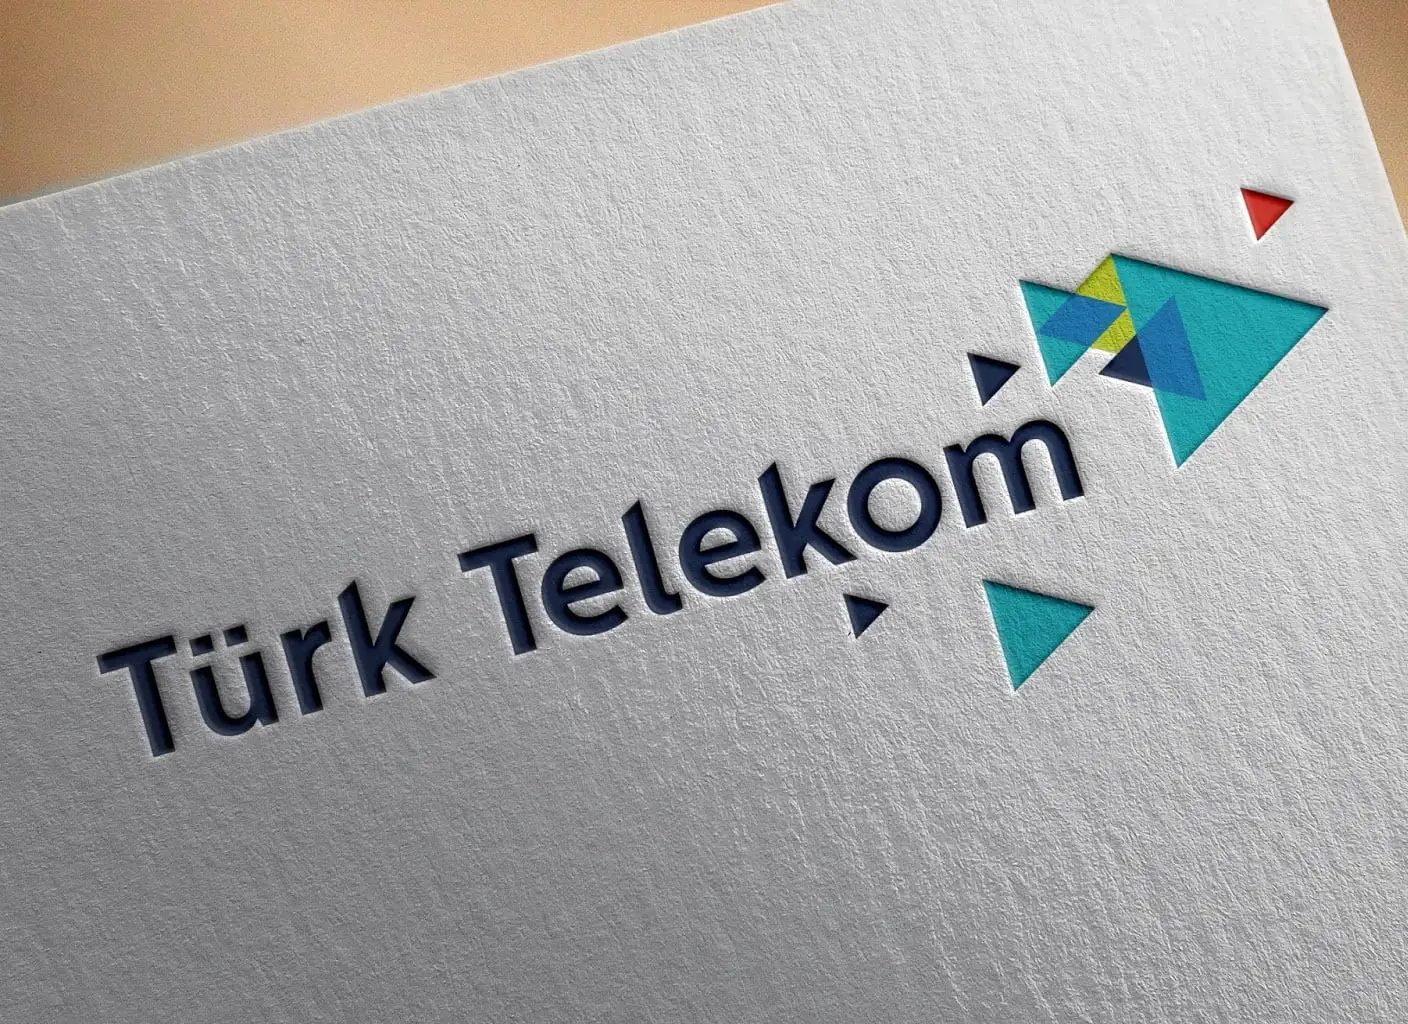 Mobil hattı Türk Telekom olanlara müjde! 1.500 TL iade edilecek